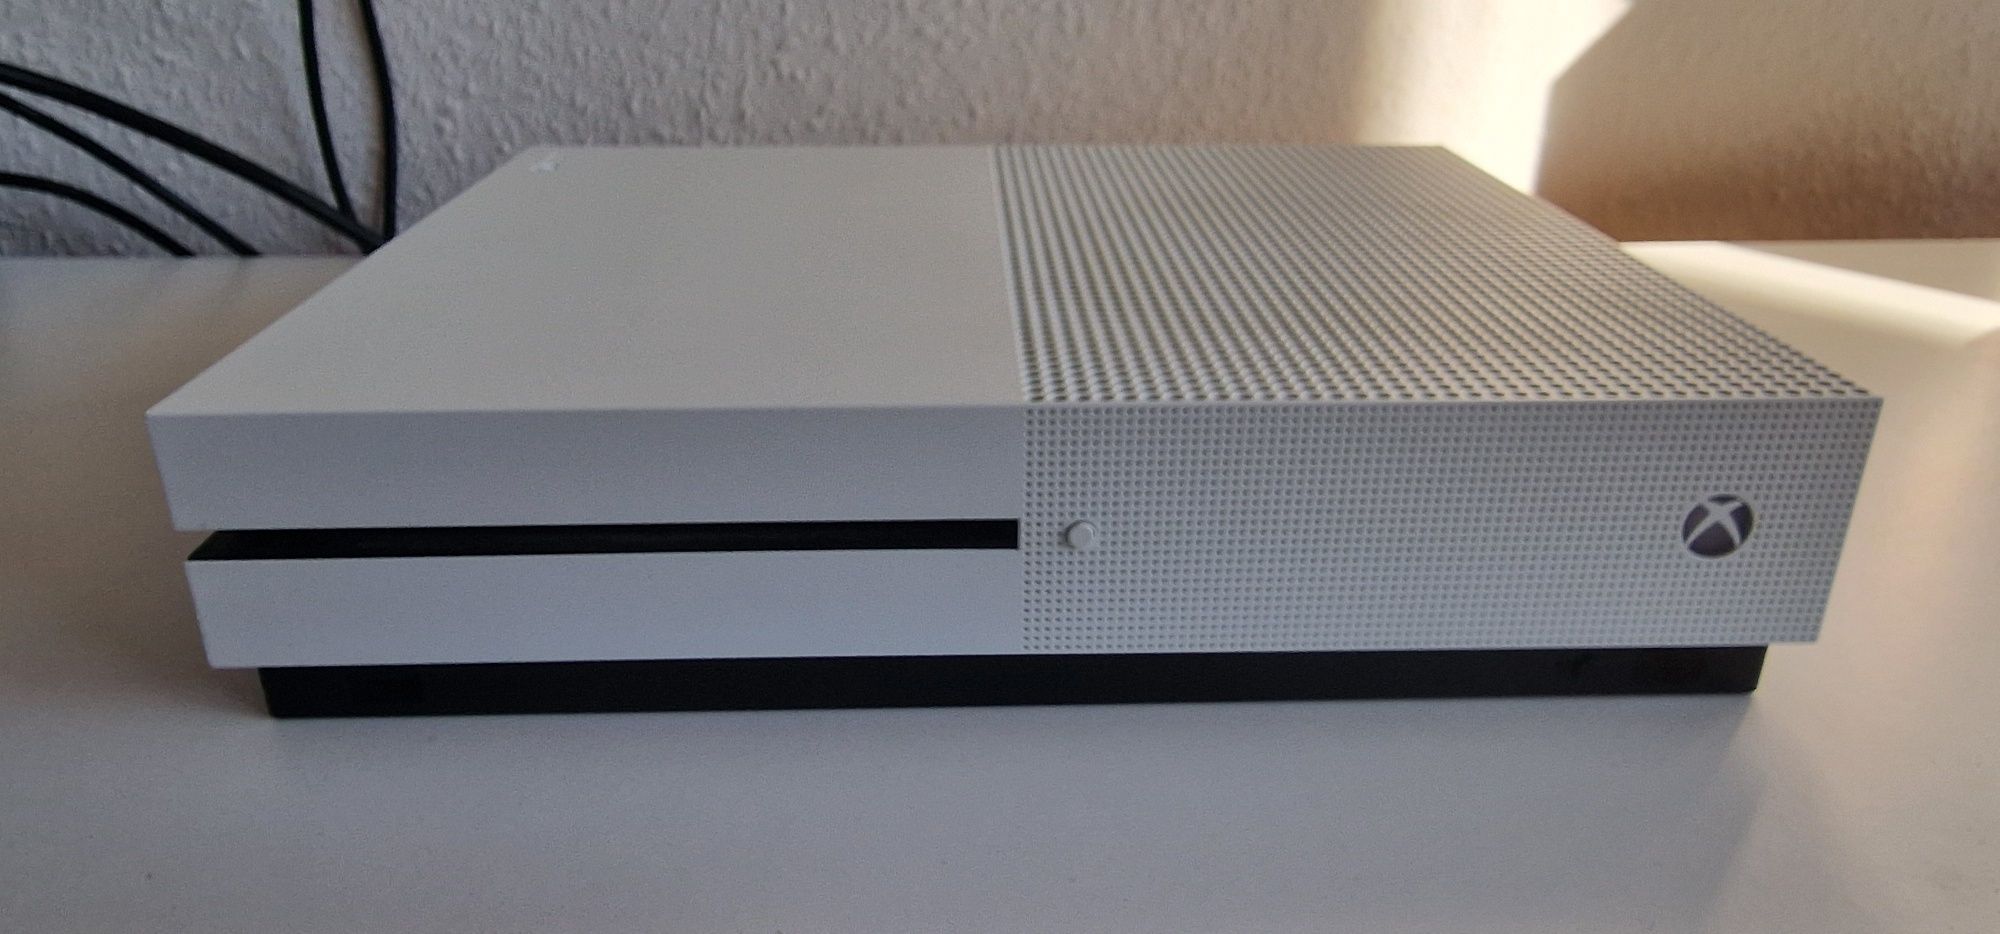 Xbox one s  biały